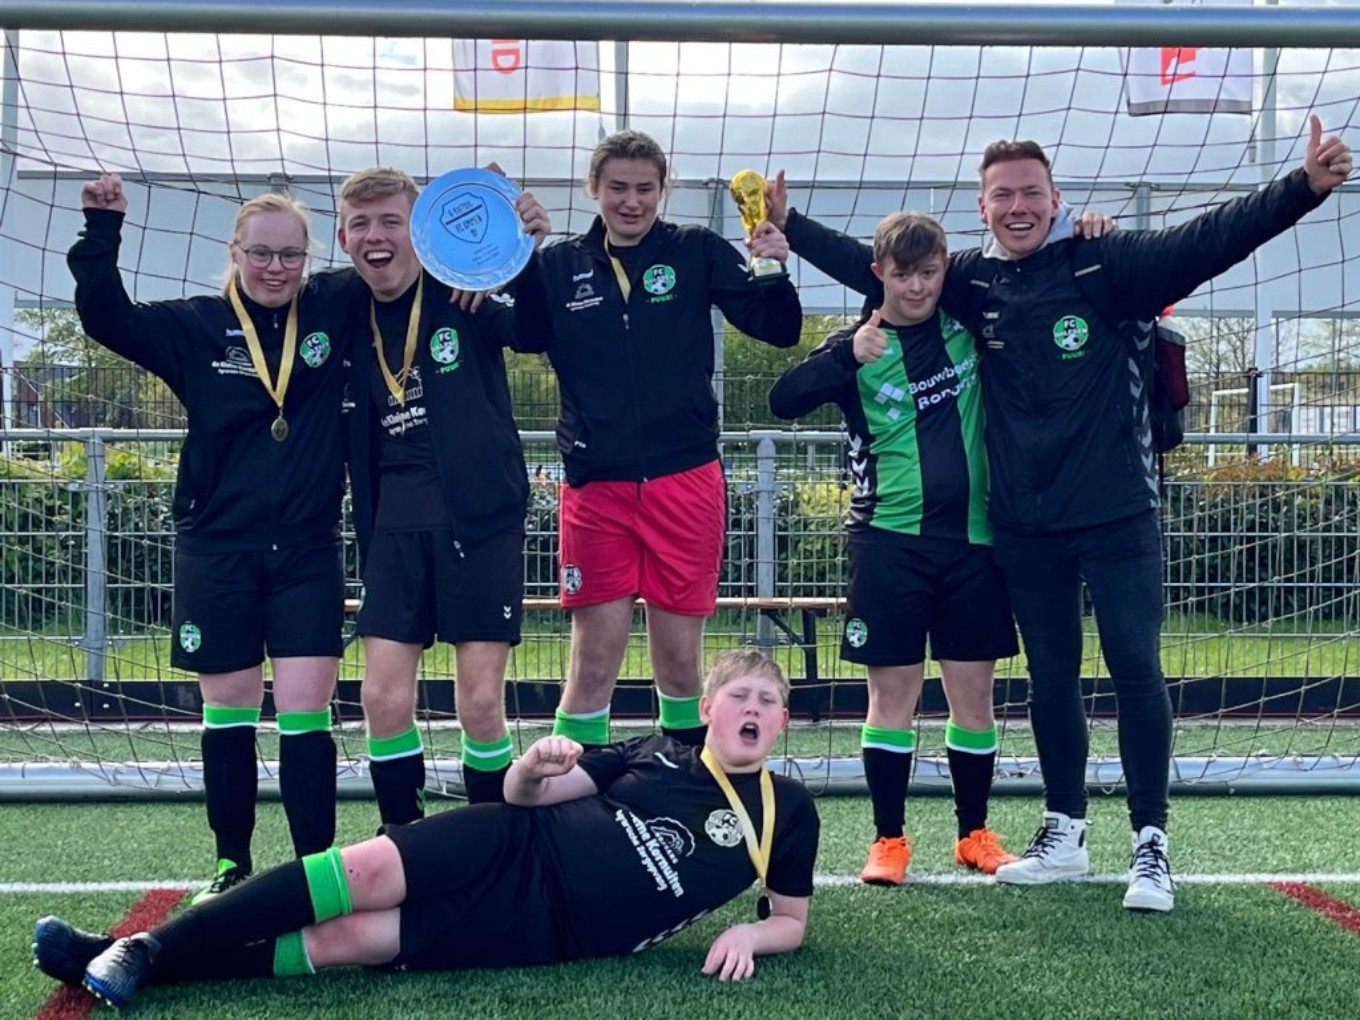 Team Puur van FC Dalfsen wint G-Voetbaltoernooi in Ommen